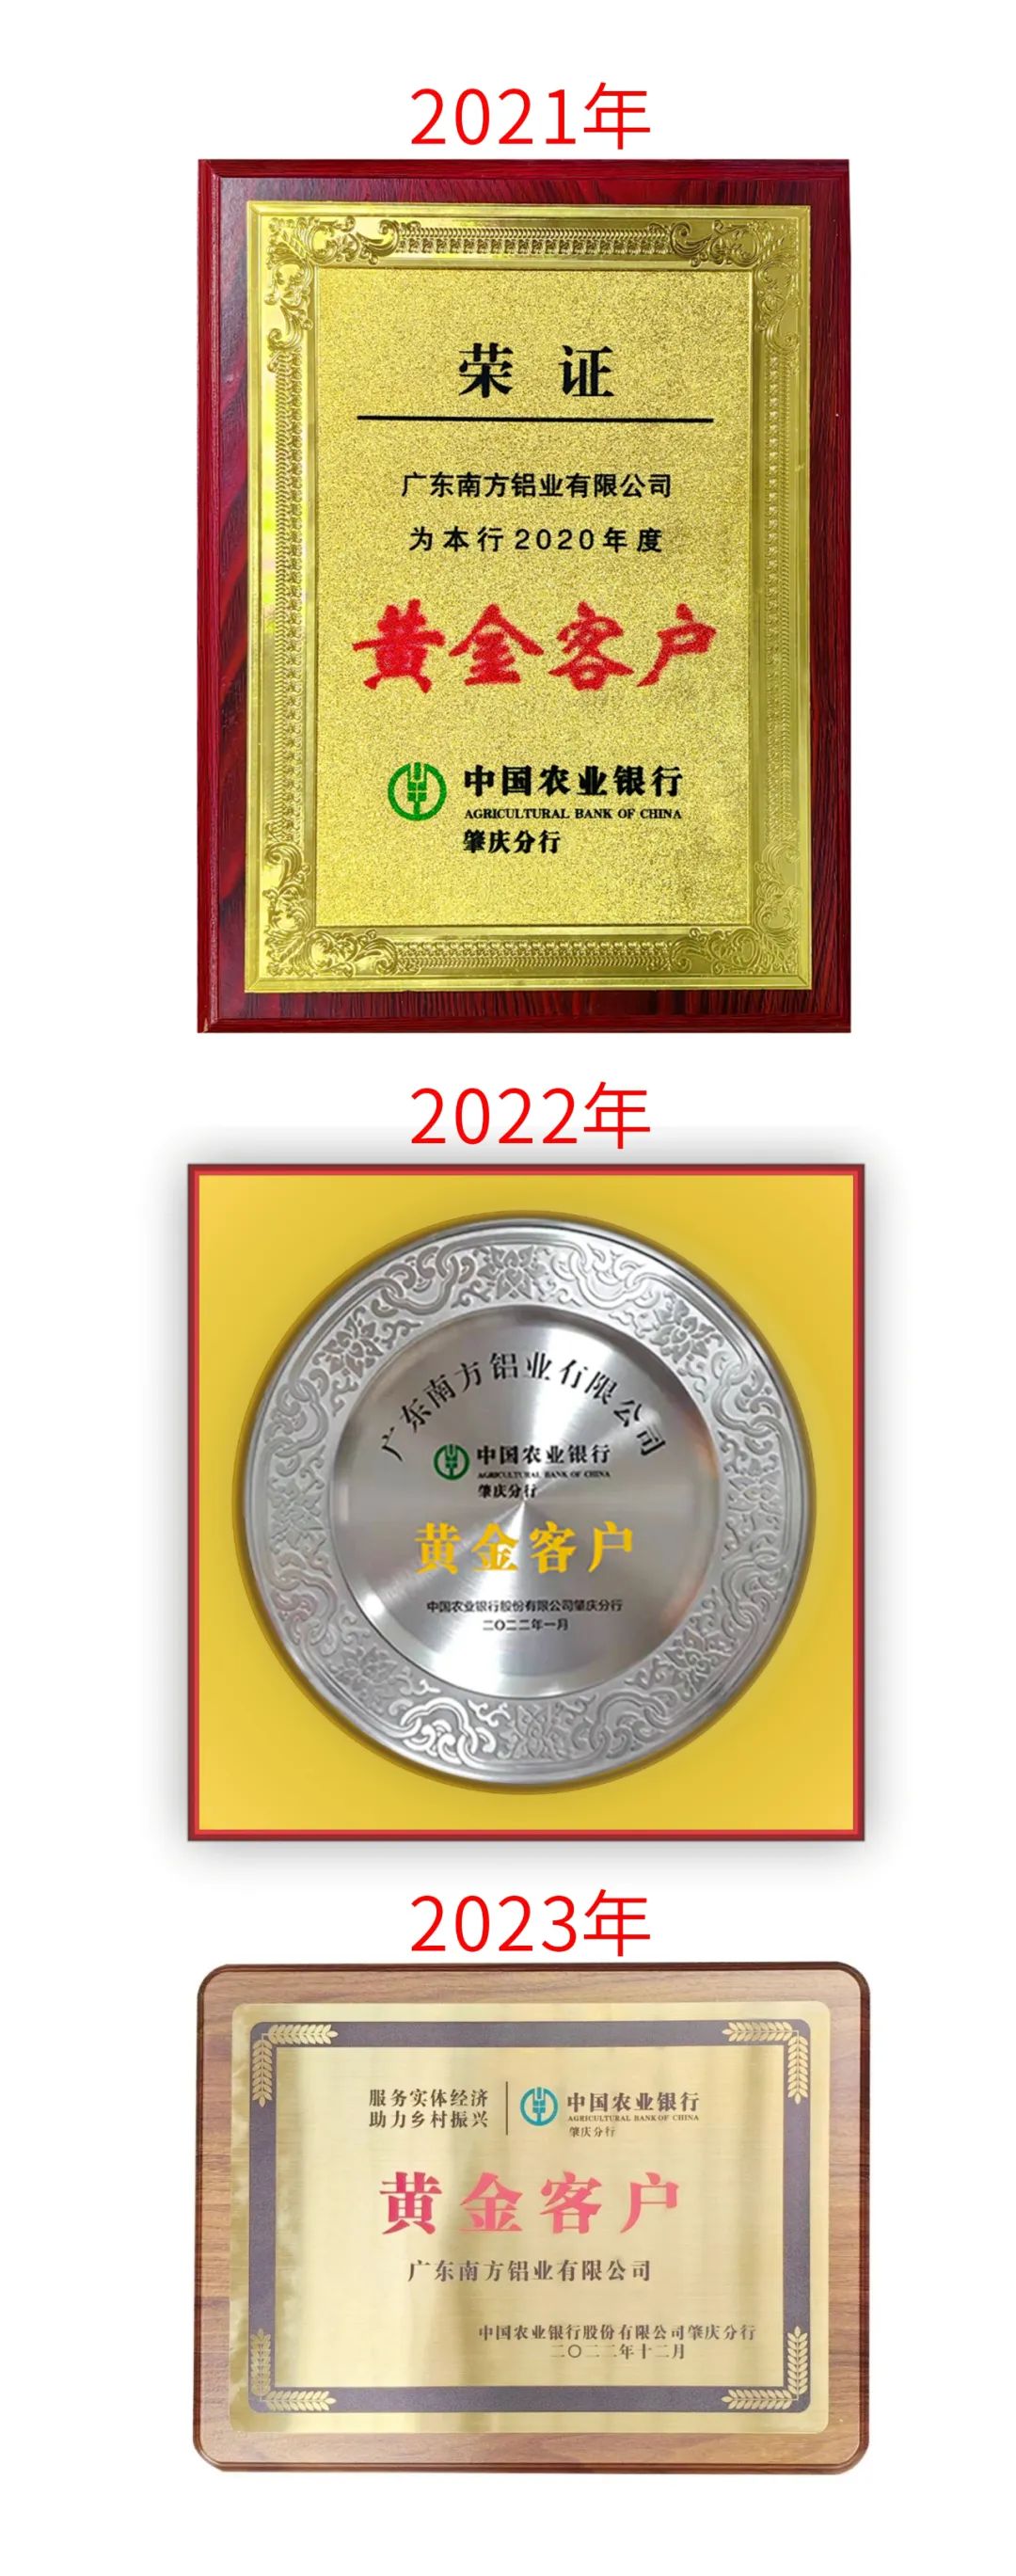 南方铝业再次被评为中国农业银行“黄金客户”